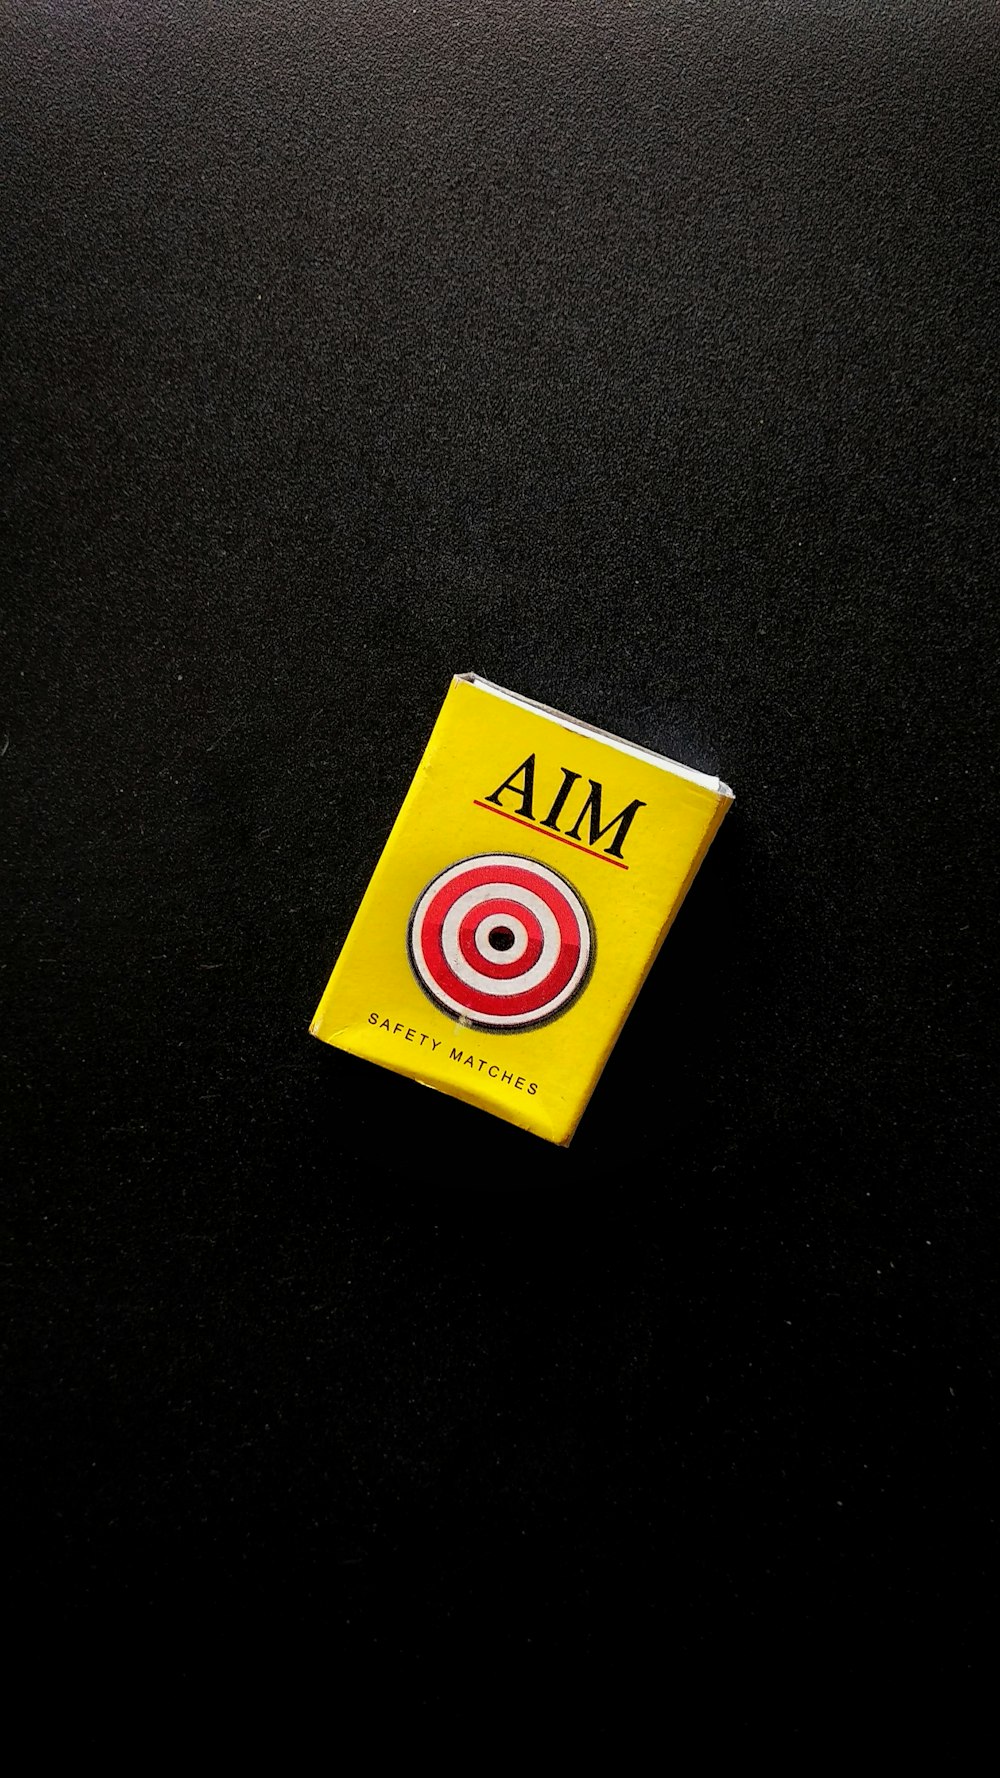 yellow Aim safety match box